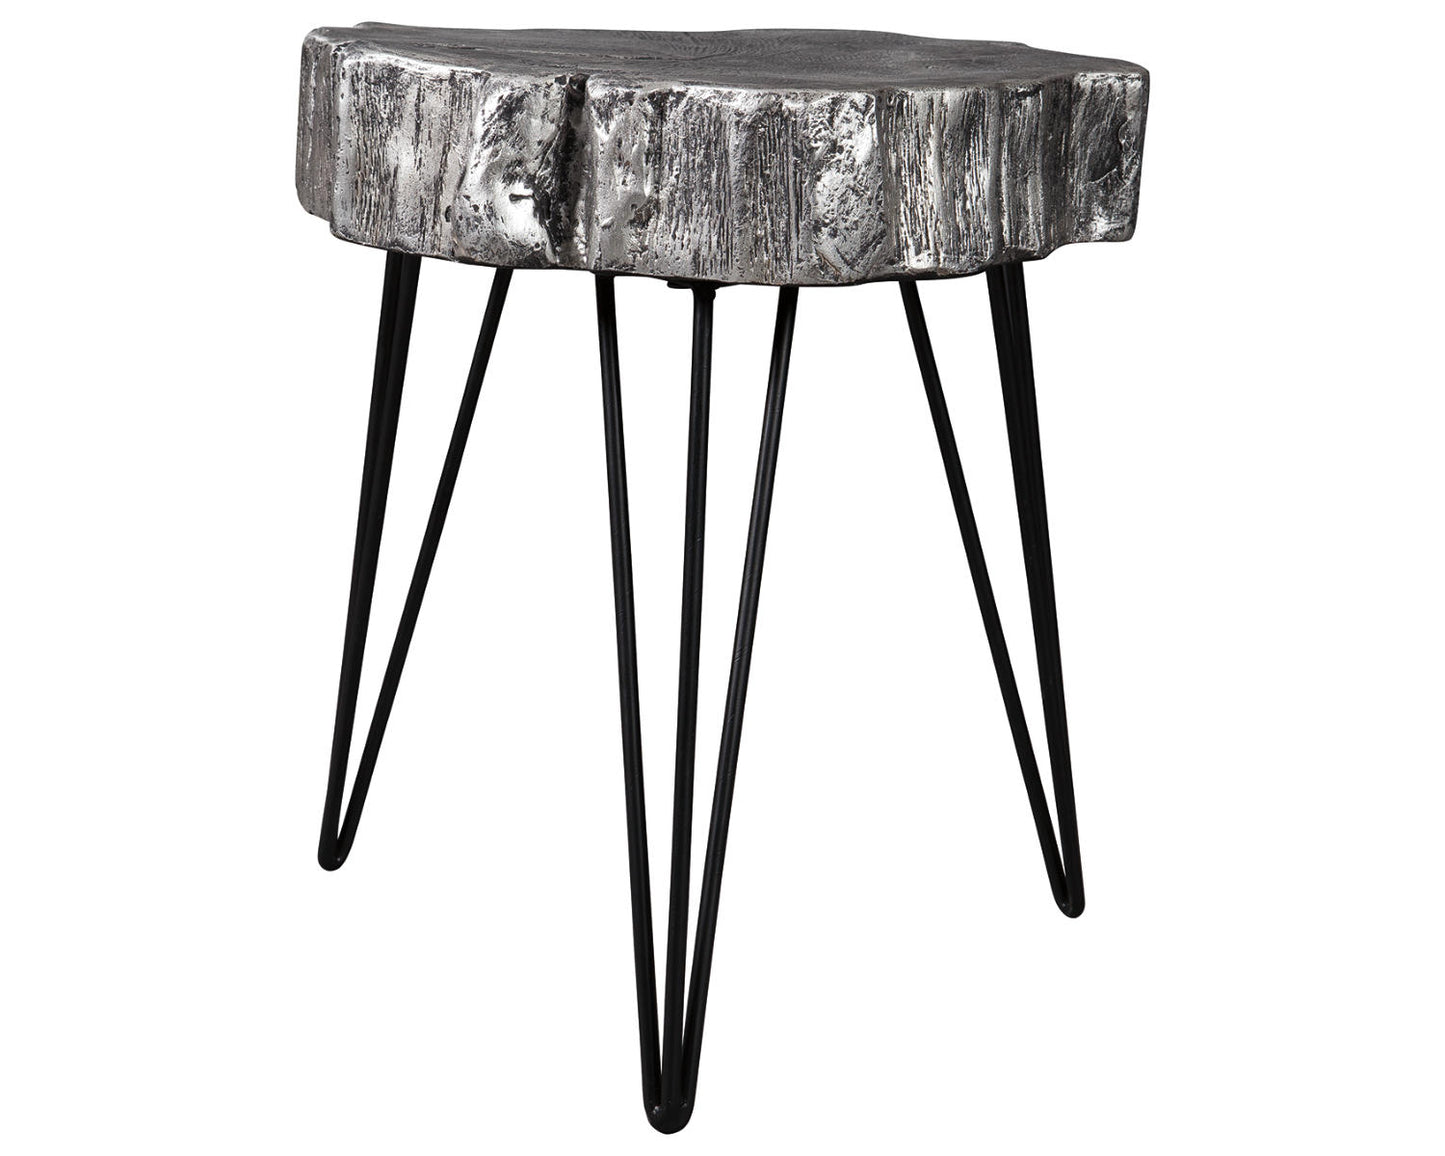 Ashley Signature Design Dellman Accent Table Black/Gray;Metallic A4000074